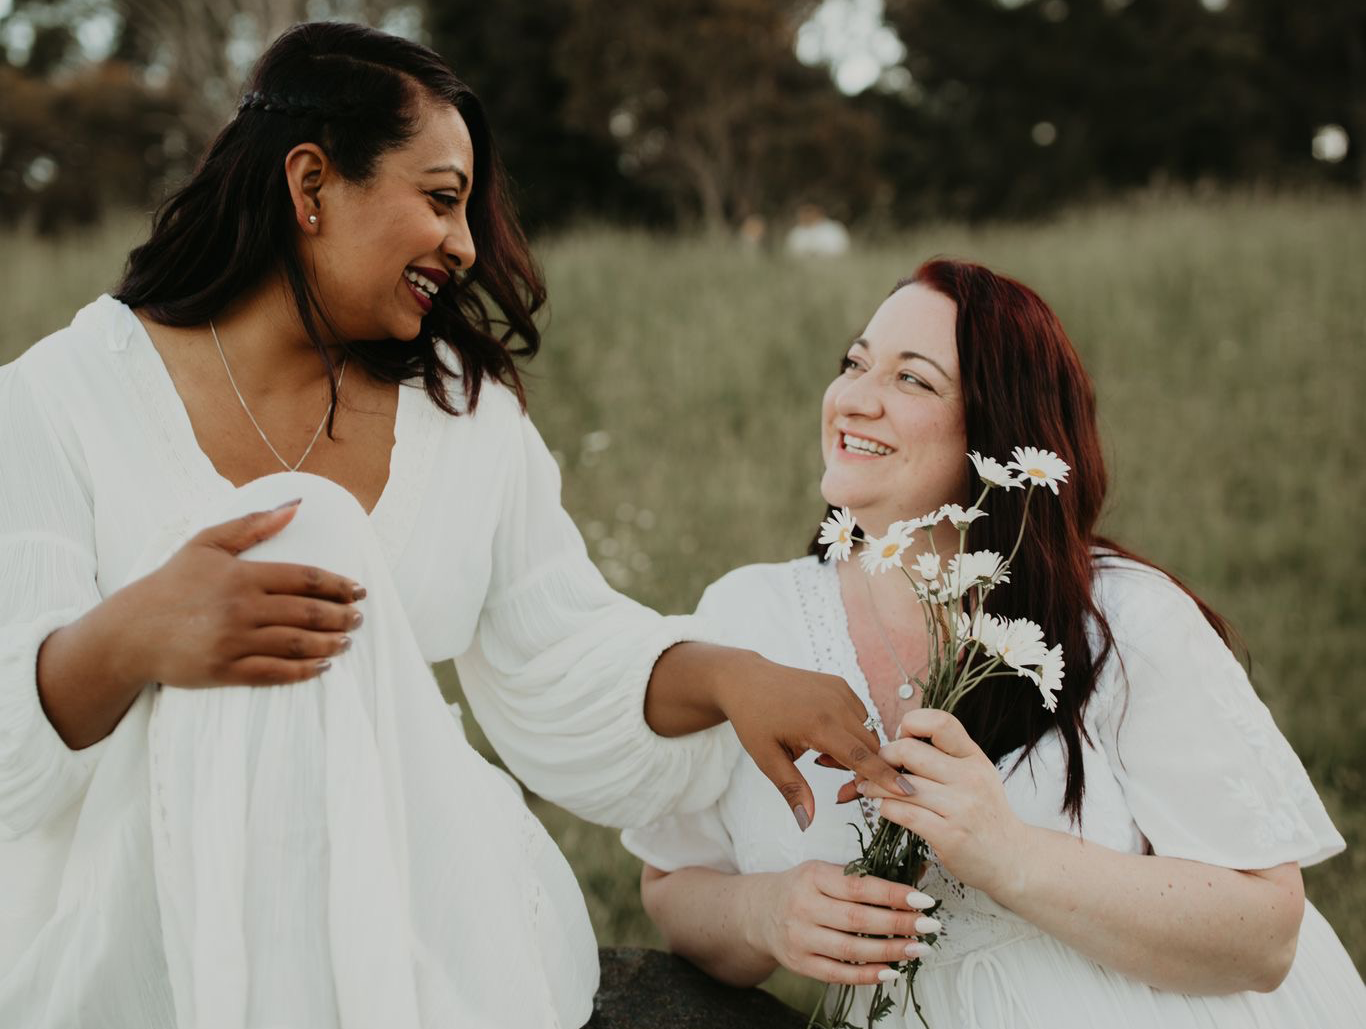 Two women in wedding dresses in a field, holding flowers